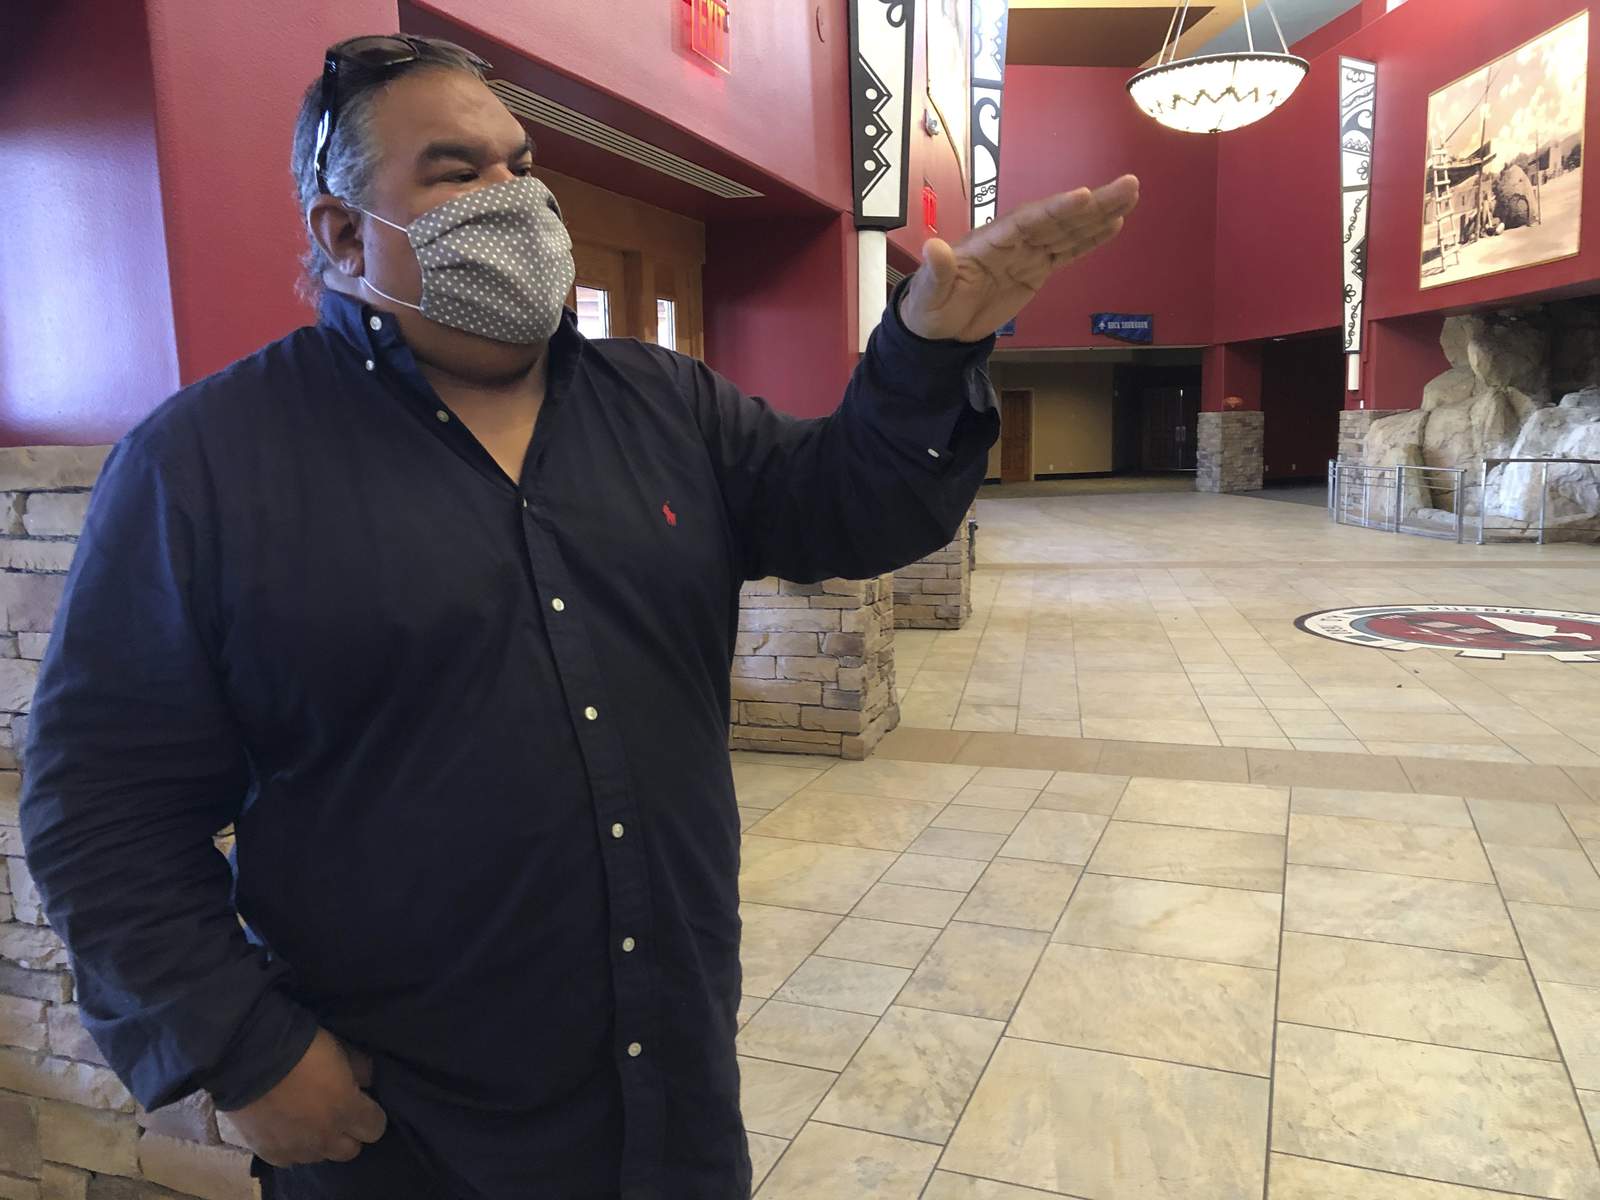 New Mexico tribe transforms old casino into movie studio